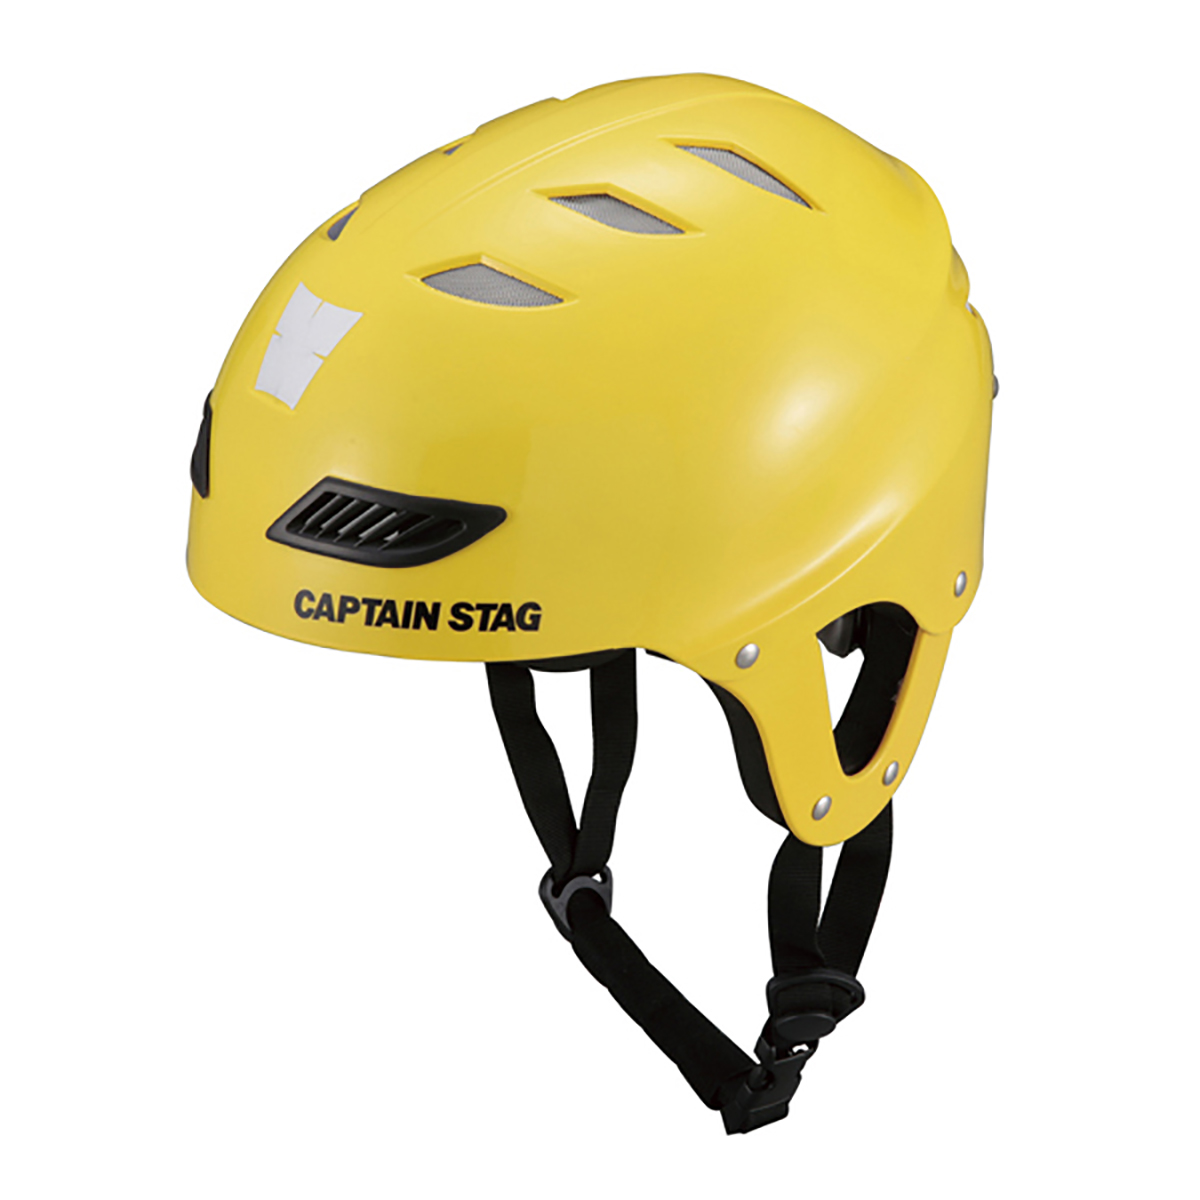 CS スポーツヘルメットEXキッズ イエロー - アウトドア・キャンプ用品 - キャプテンスタッグ